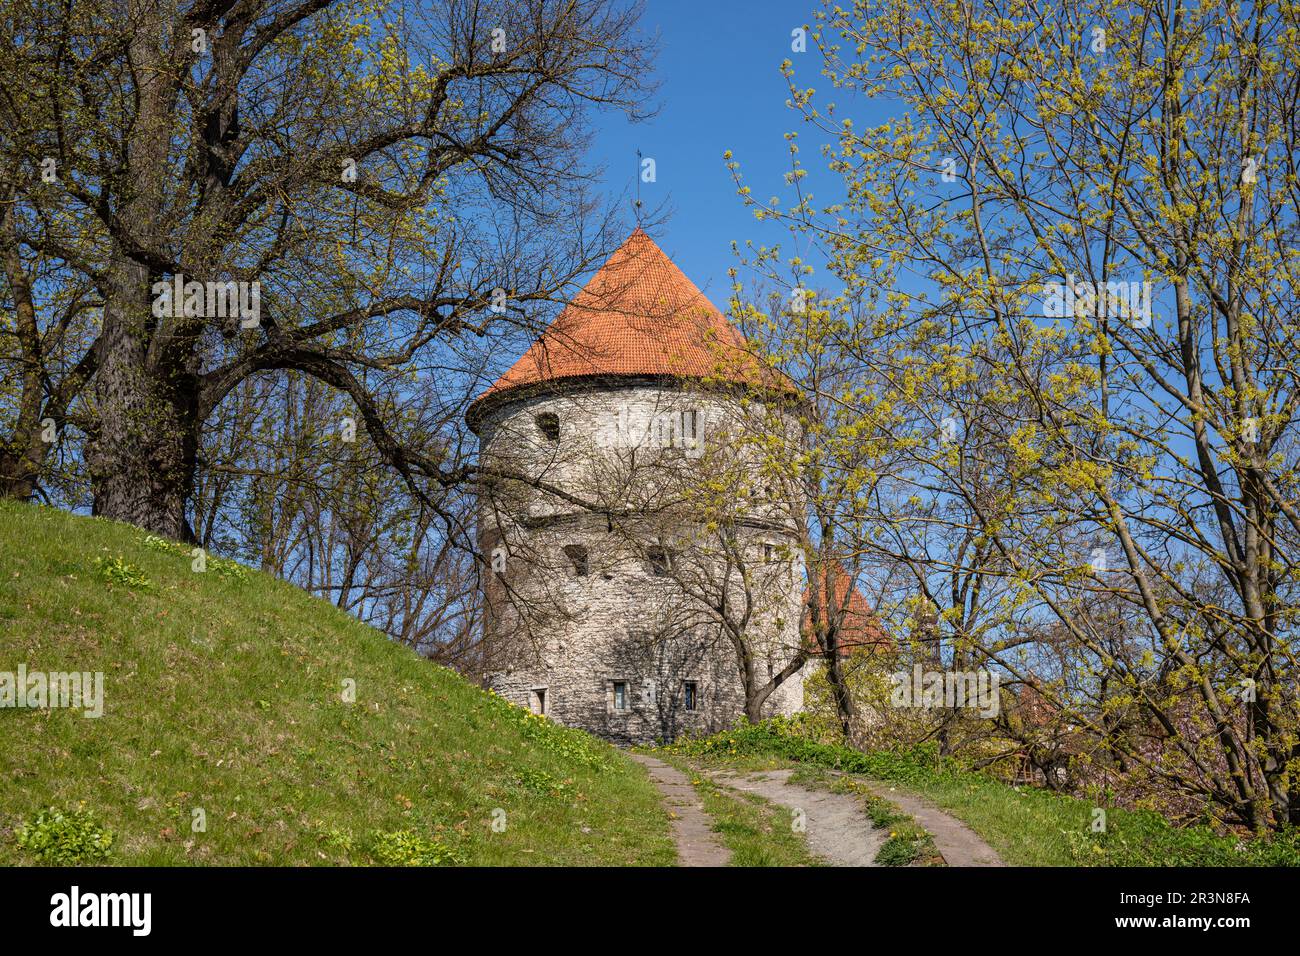 Kiek in de Kök, Artillerieturm, erbaut 1475, vor klarem blauen Himmel an einem sonnigen Frühlingstag in Vanalinn, der Altstadt von Tallinn, Estland Stockfoto